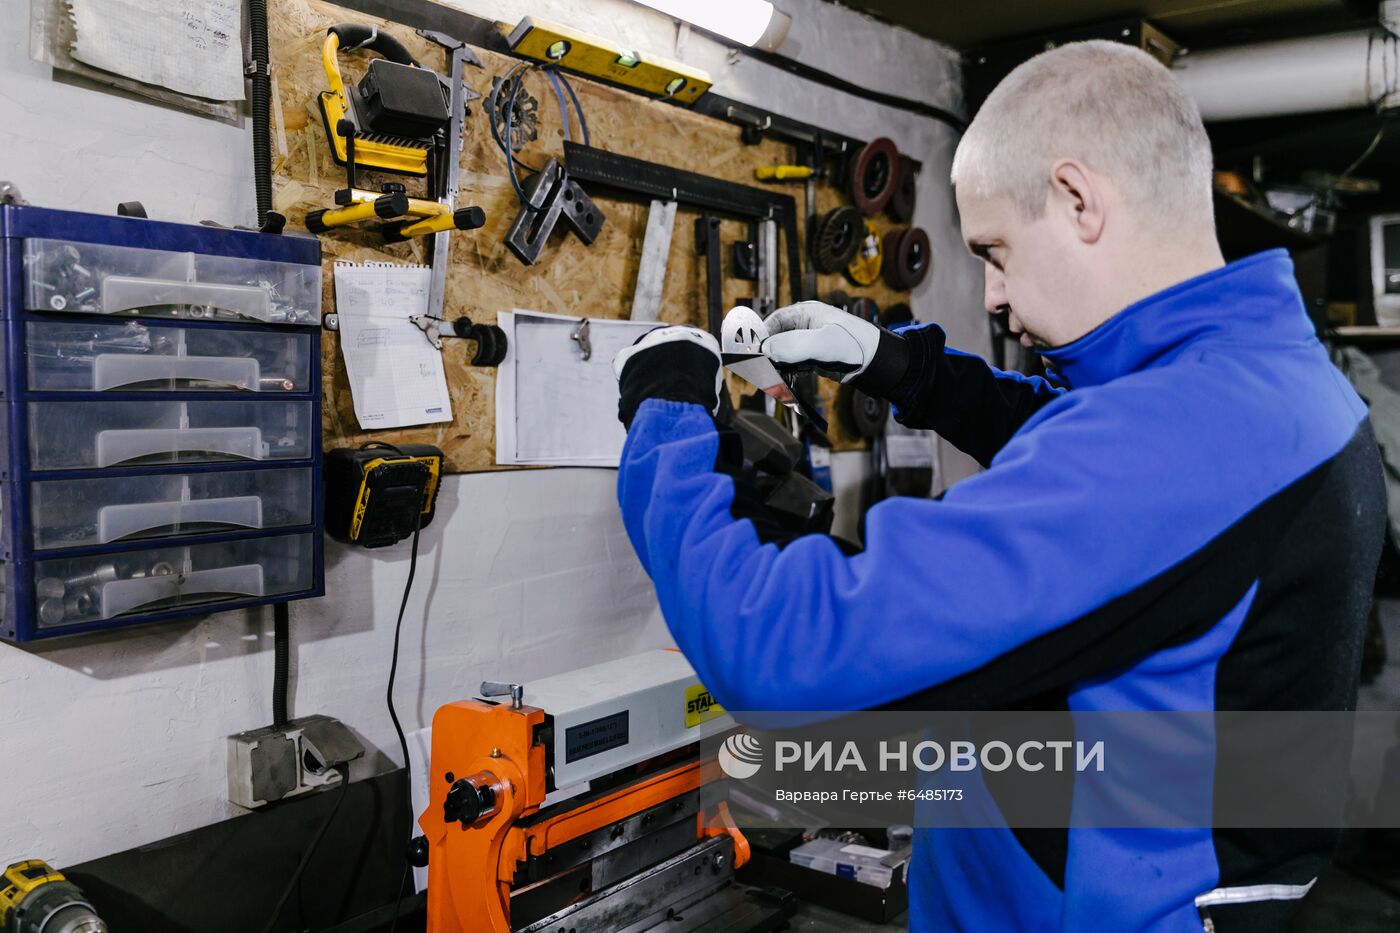 Изготовление полигональных фигур из металла в Иваново